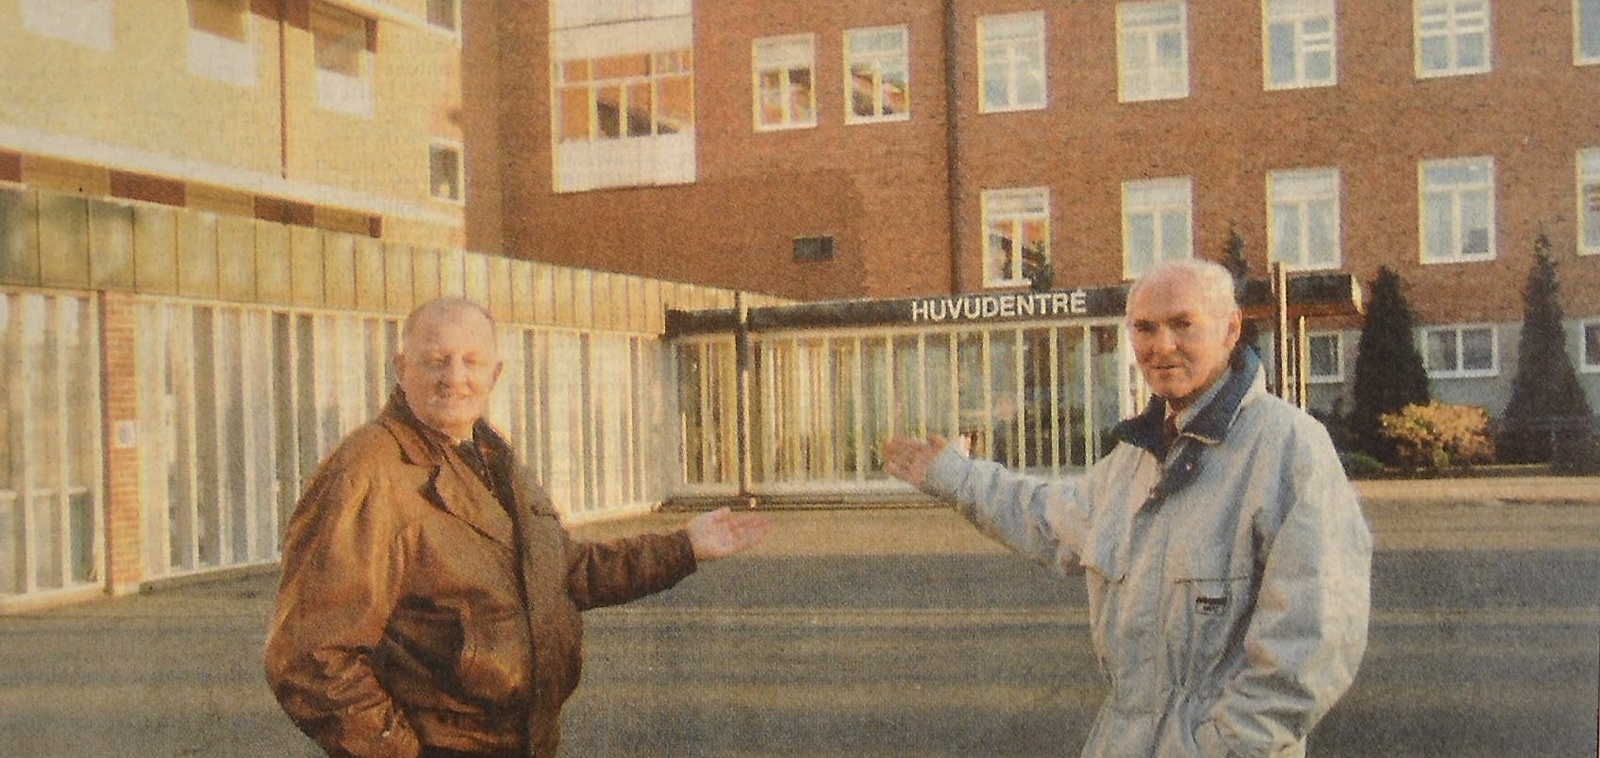 Bevara sjukhuset som det är, menar Åke Lind och Curt Hjalmarsson.
Arkiv: Mats Wivel